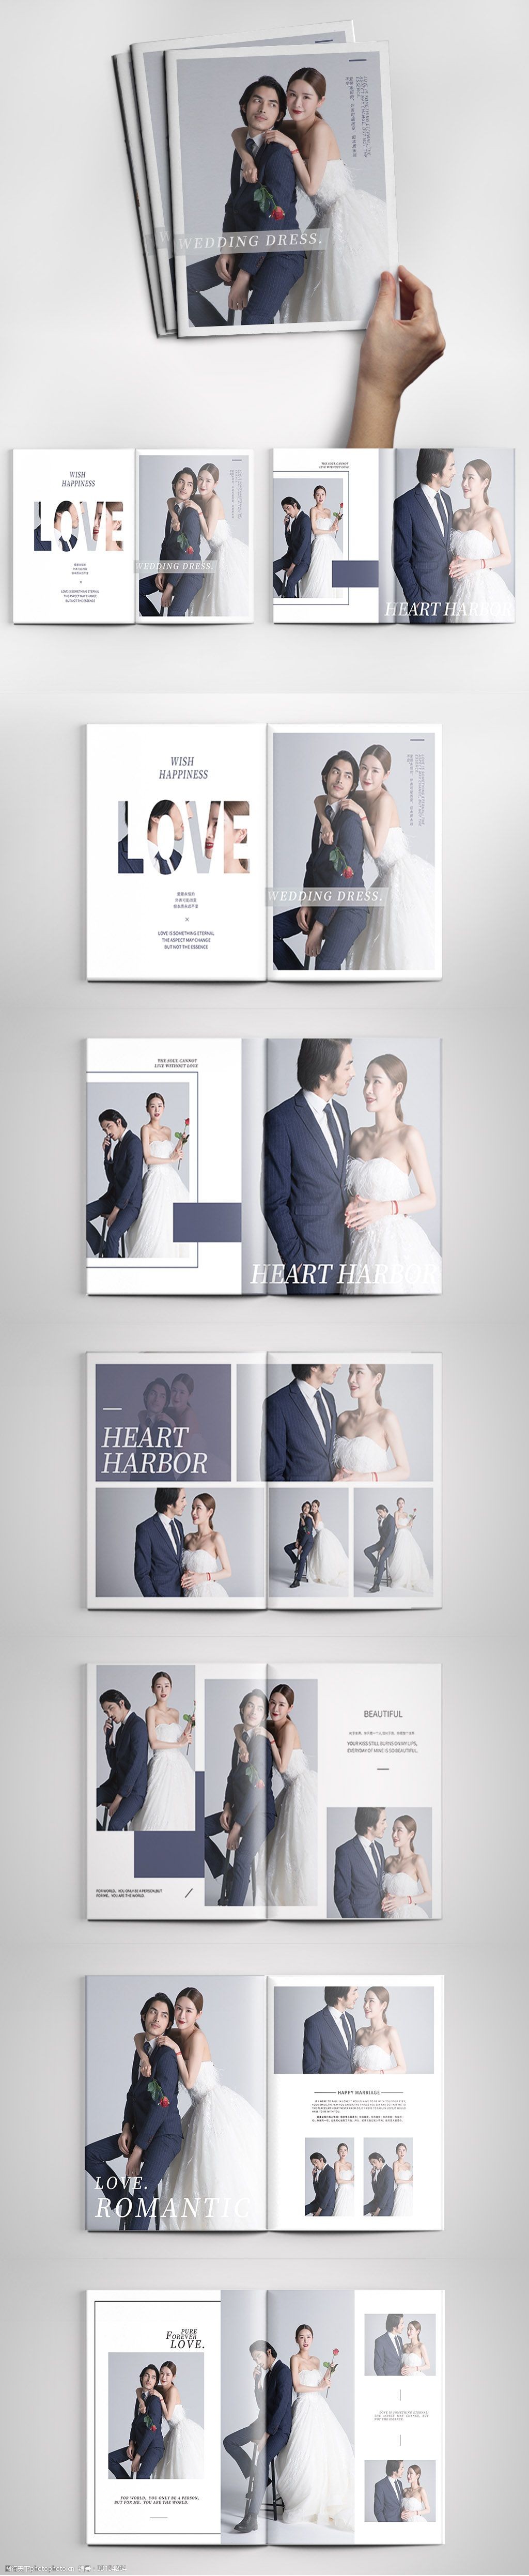 相册模板 相册排版 影楼 婚纱 写真 摄影 书籍设计 排版设计